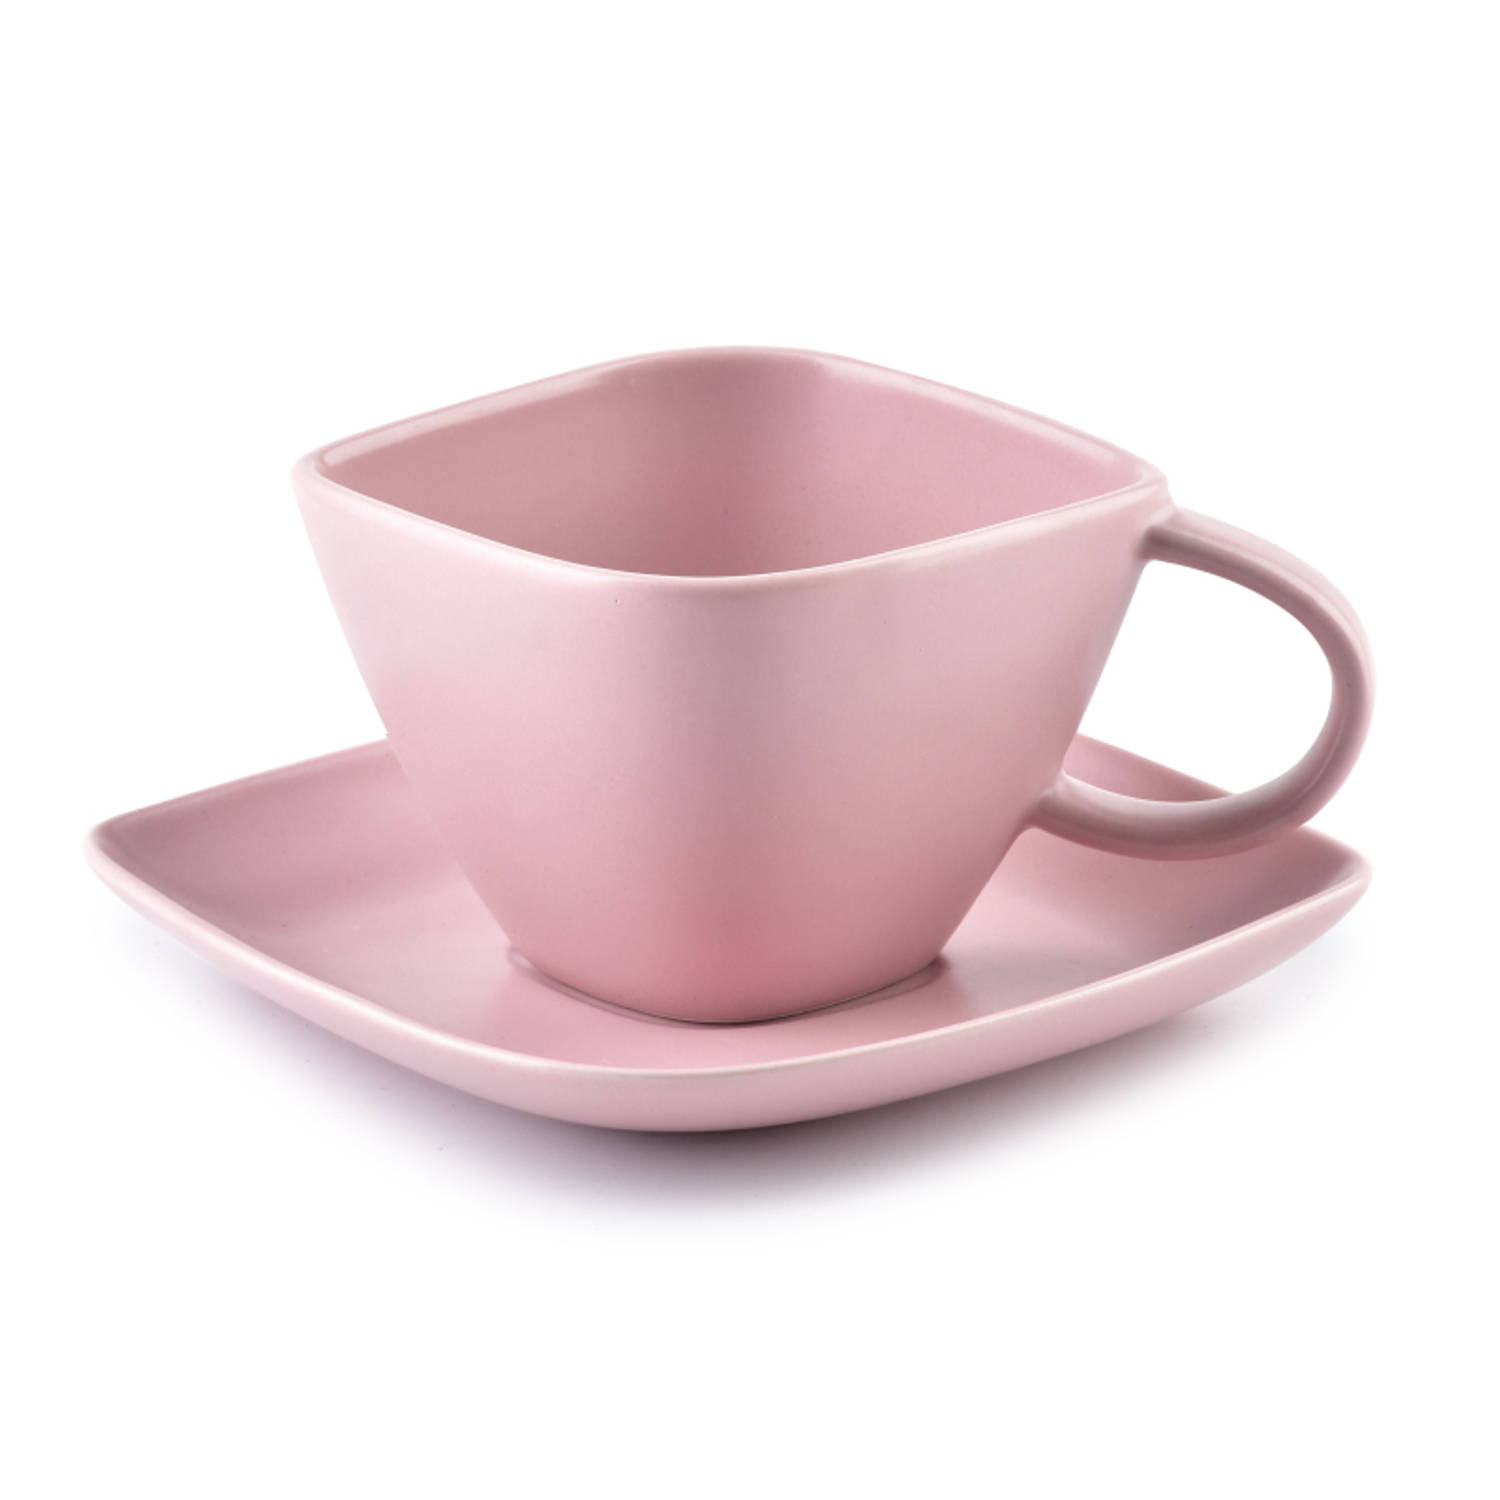 Affekdesign Happy koffie of thee kop met schotel diamant vormig 200 ml roze - Koffiekopje of theekopje met schotel - Matte poeder roze kleur - 200ml